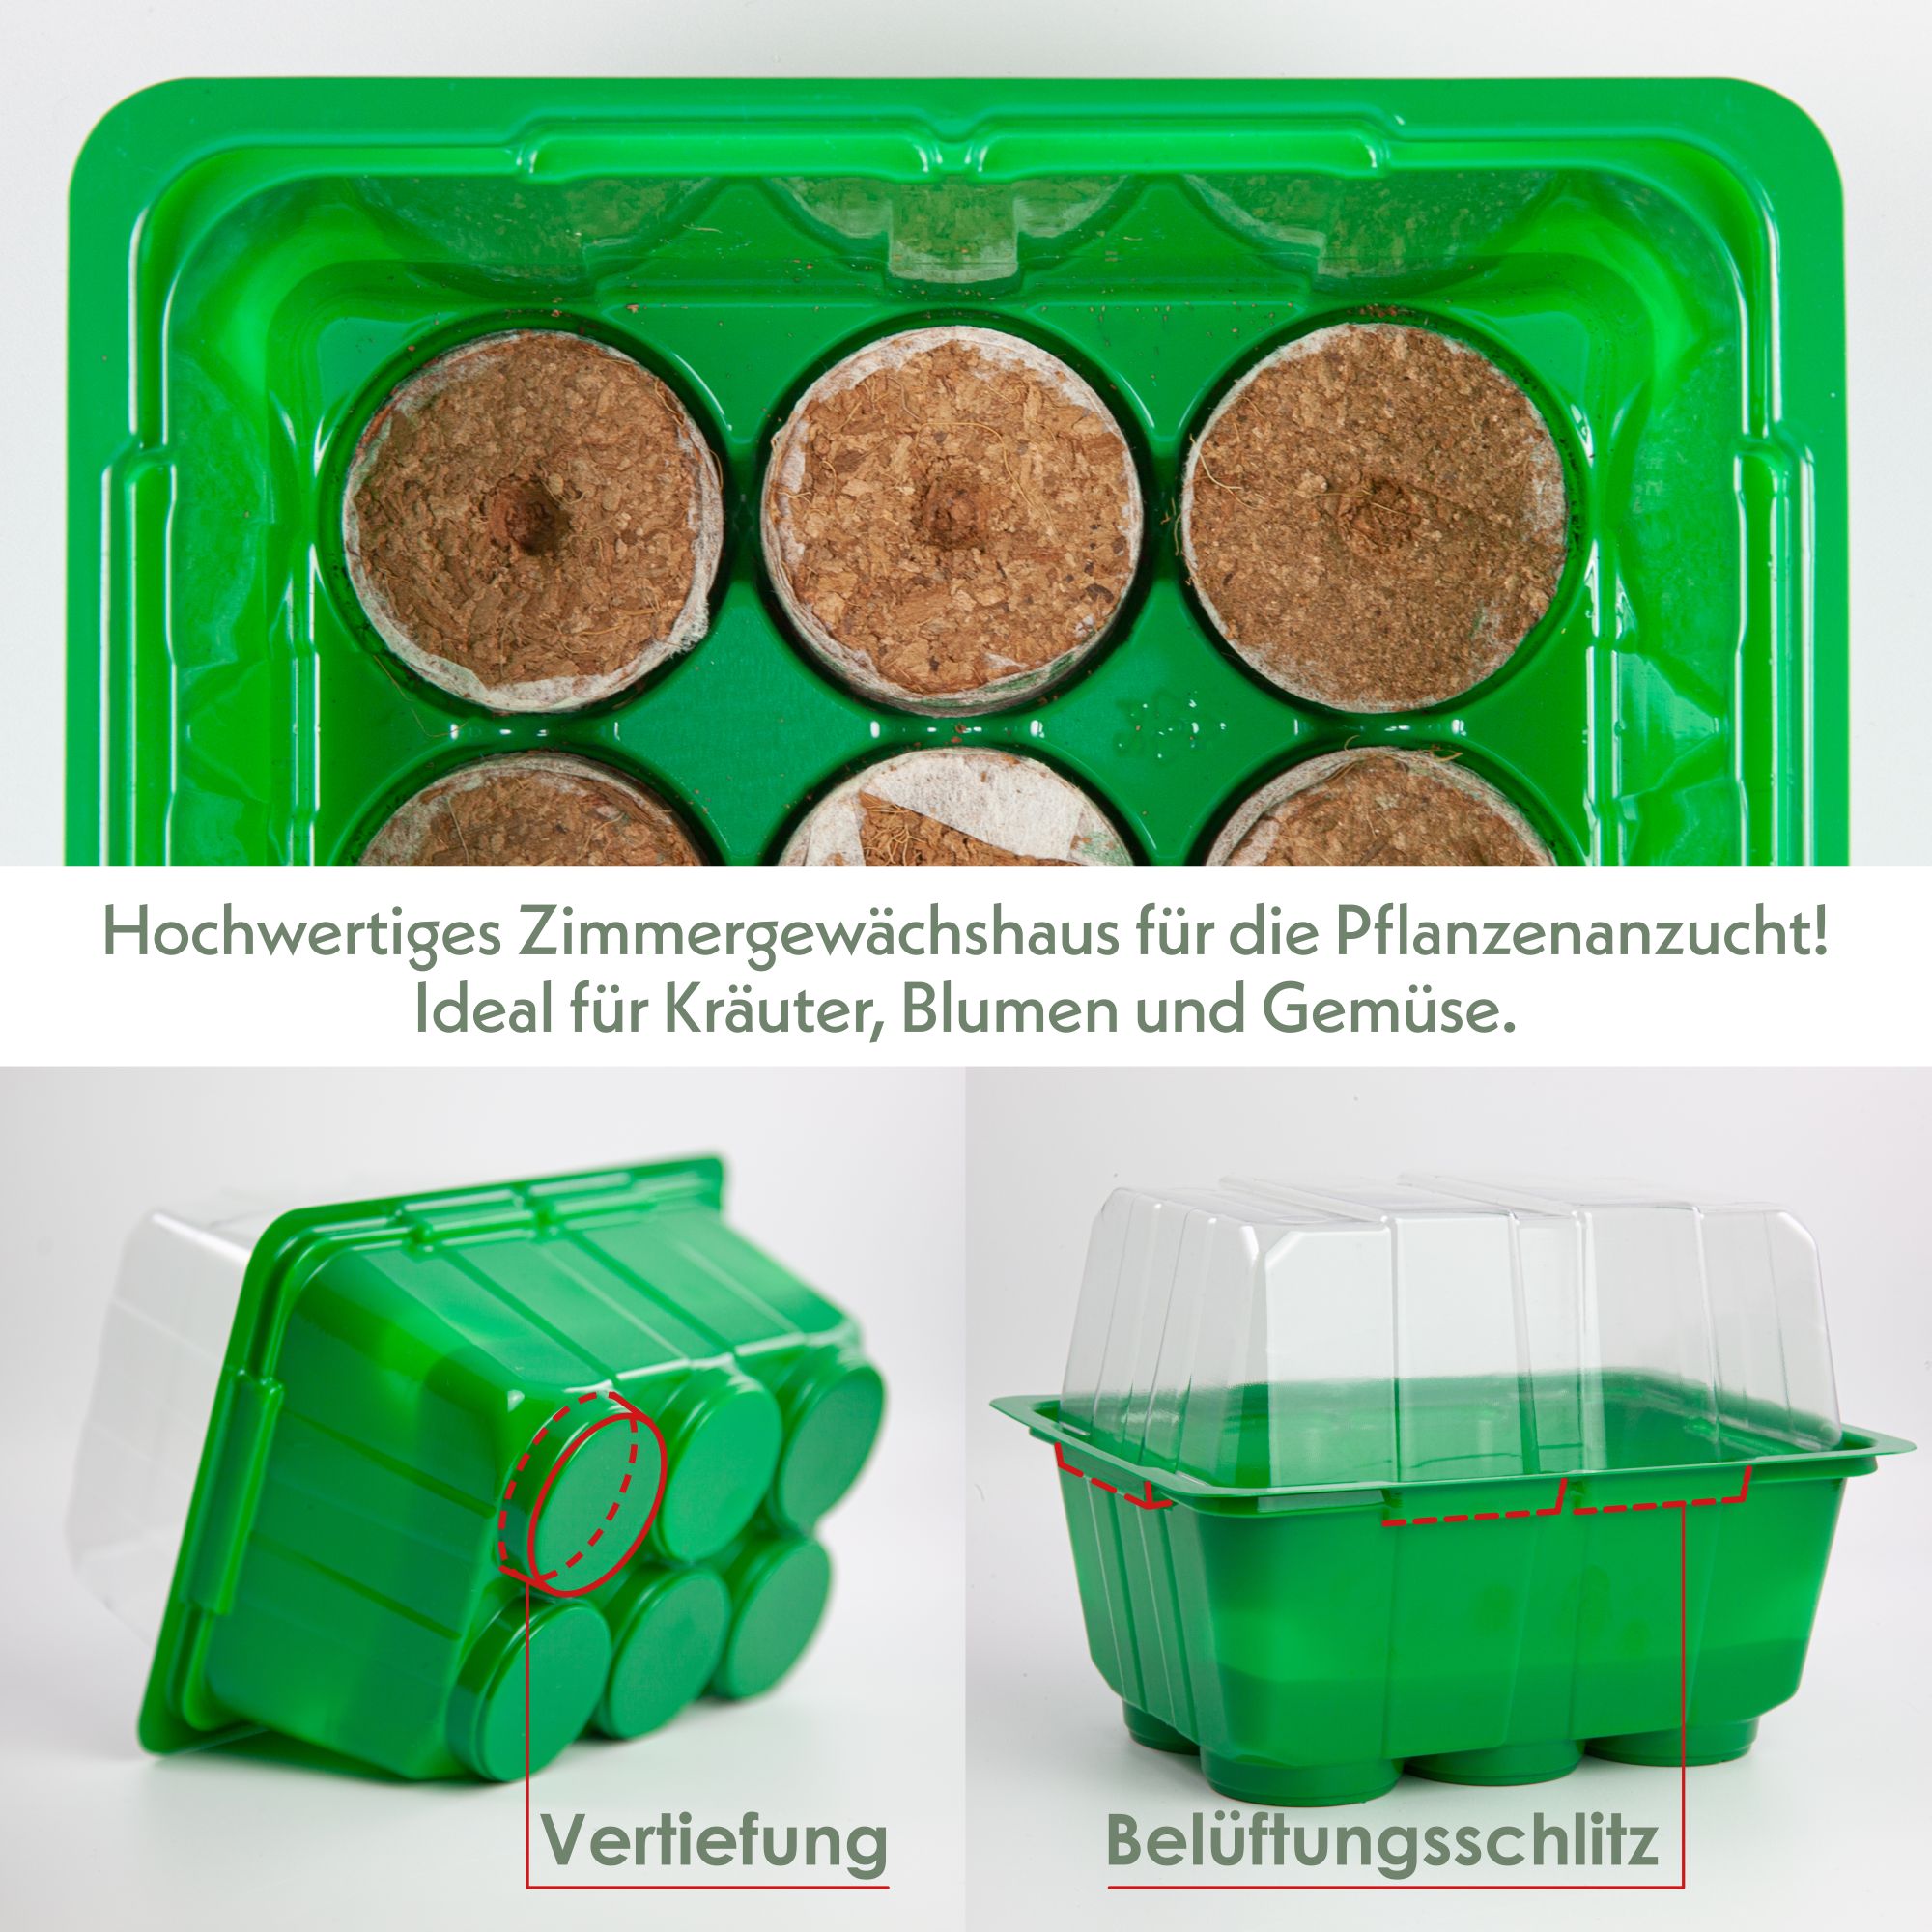 Mini-Gewächshaus inkl. Kokosscheiben in den Maße 16 x 11,5 x 11cm -Made in Germany-